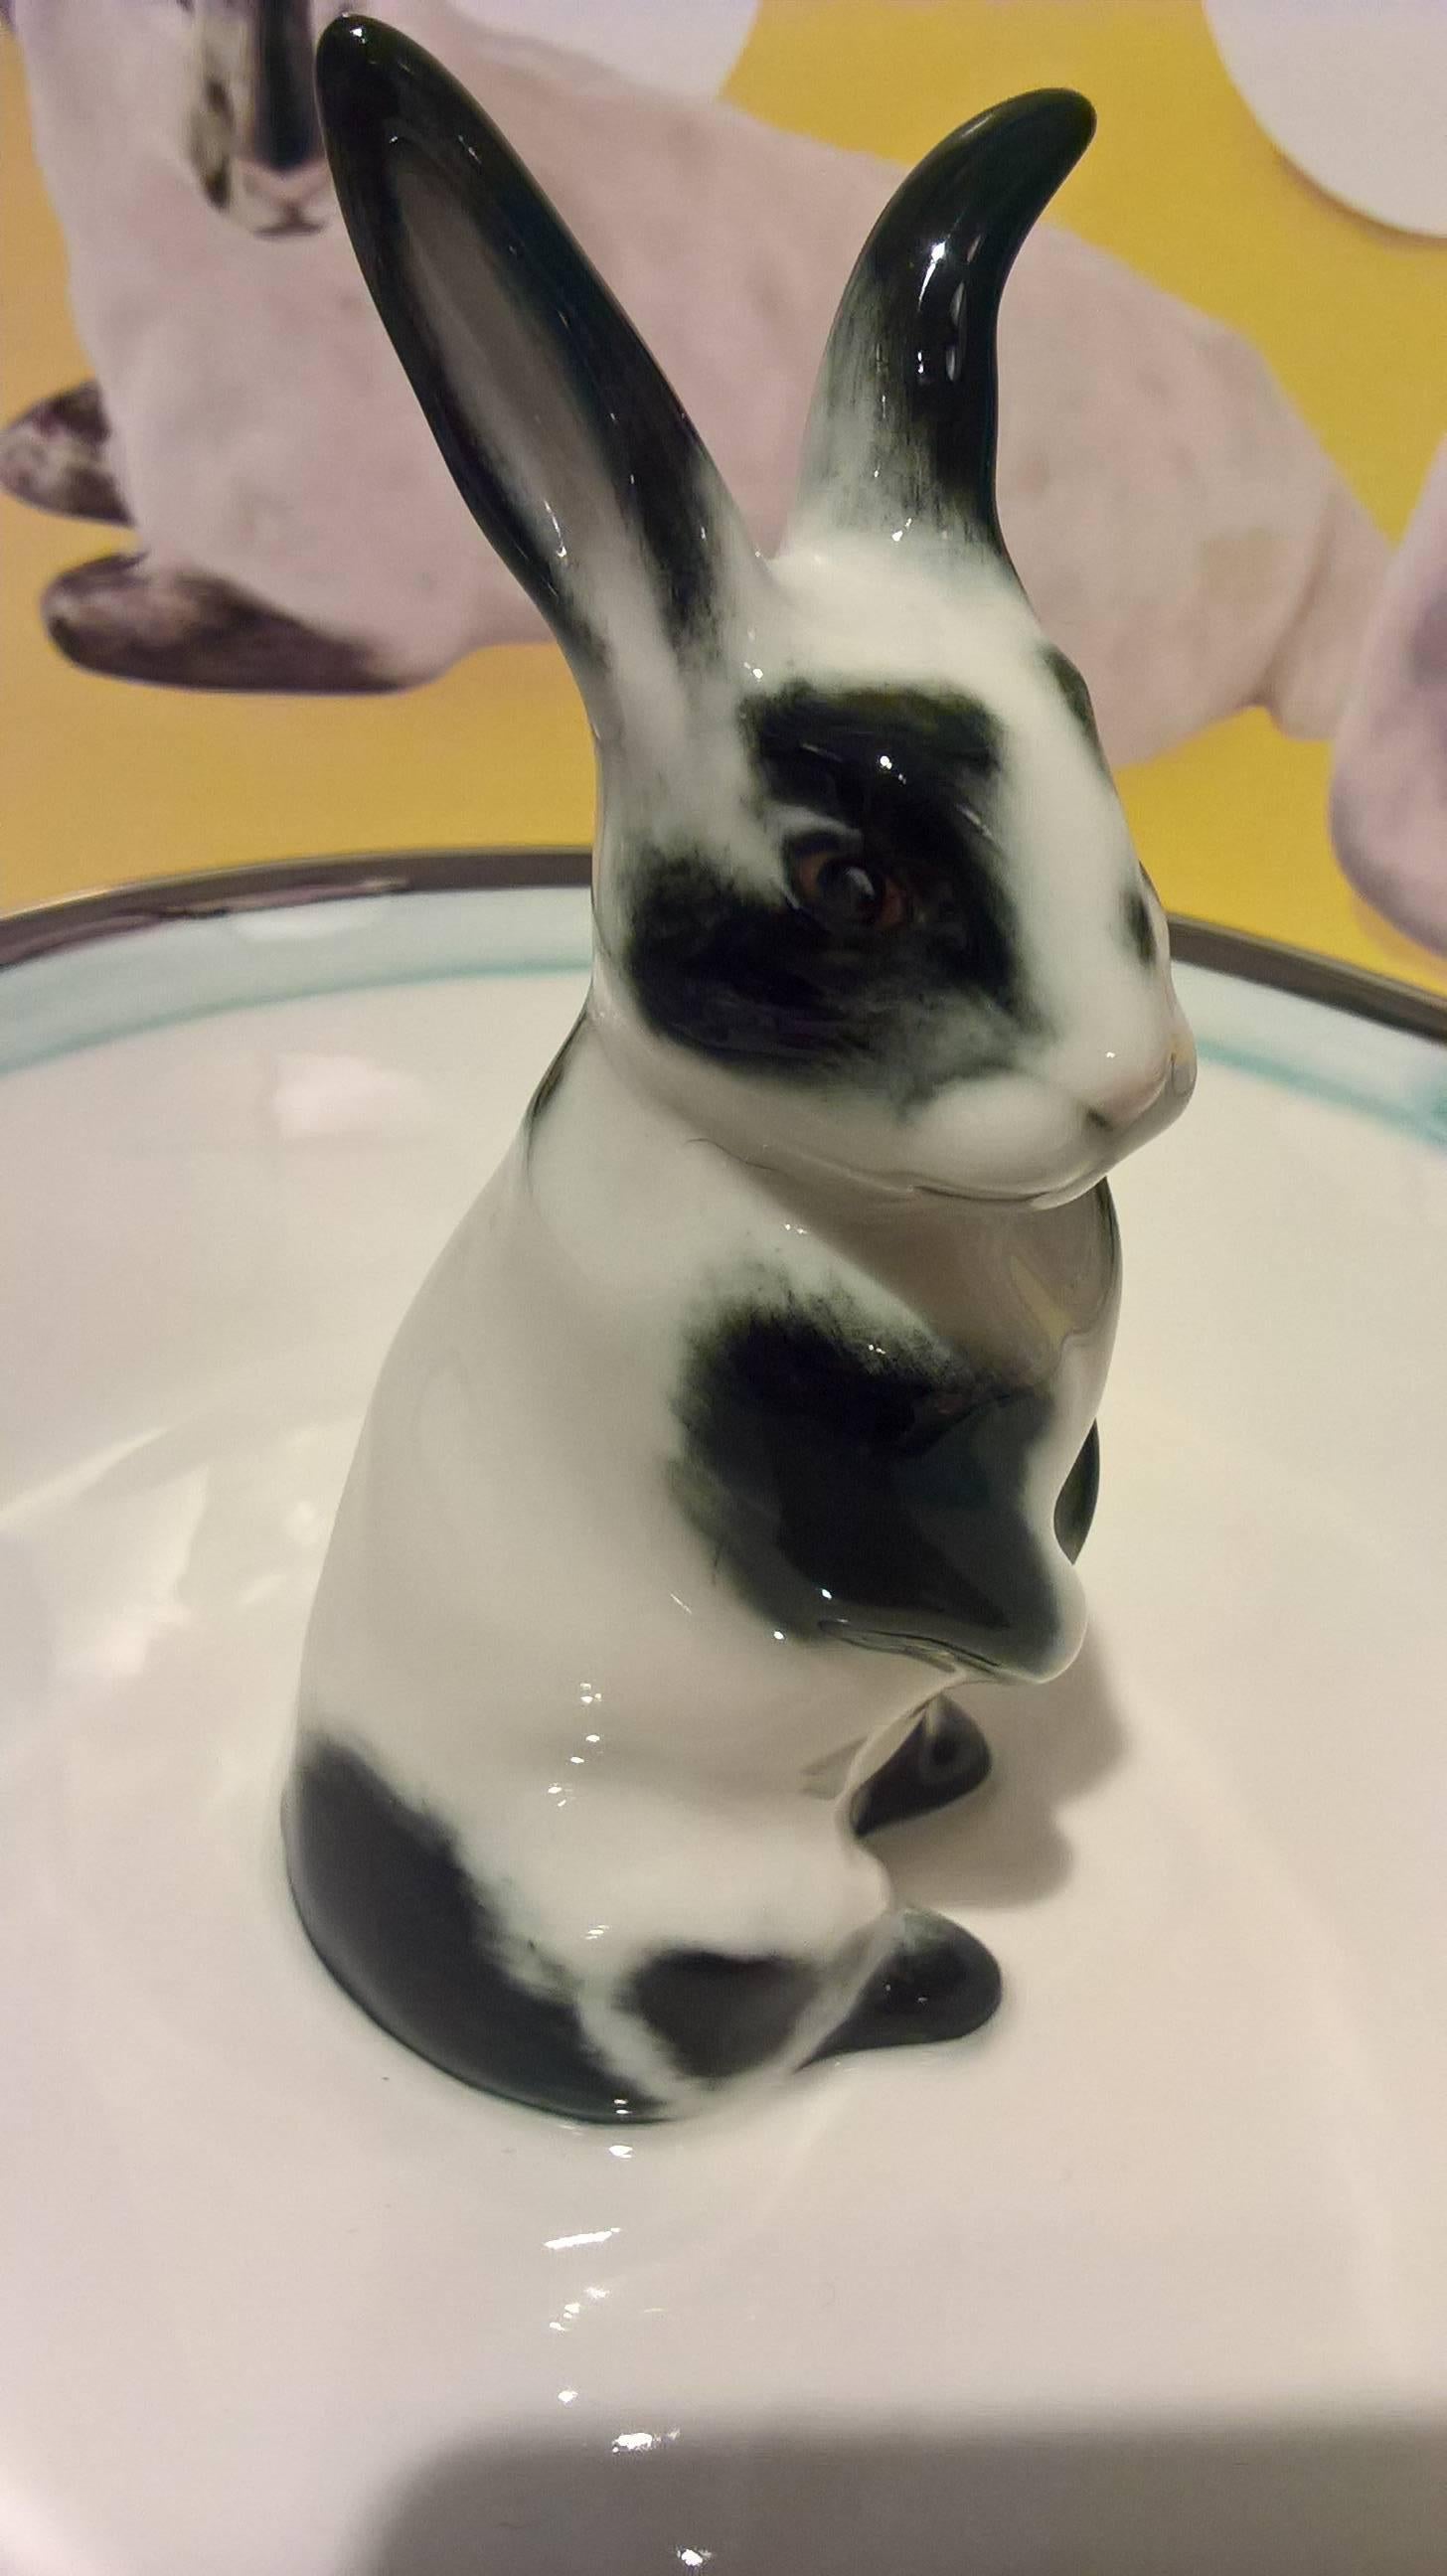 Charmant plat en porcelaine entièrement réalisé à la main avec un rabbit peint à main levée dans un décor traditionnel de Pâques. Le lapin est peint dans un décor noir et blanc assis au milieu du bol. Le plat est encadré d'une ligne bleu pâle et